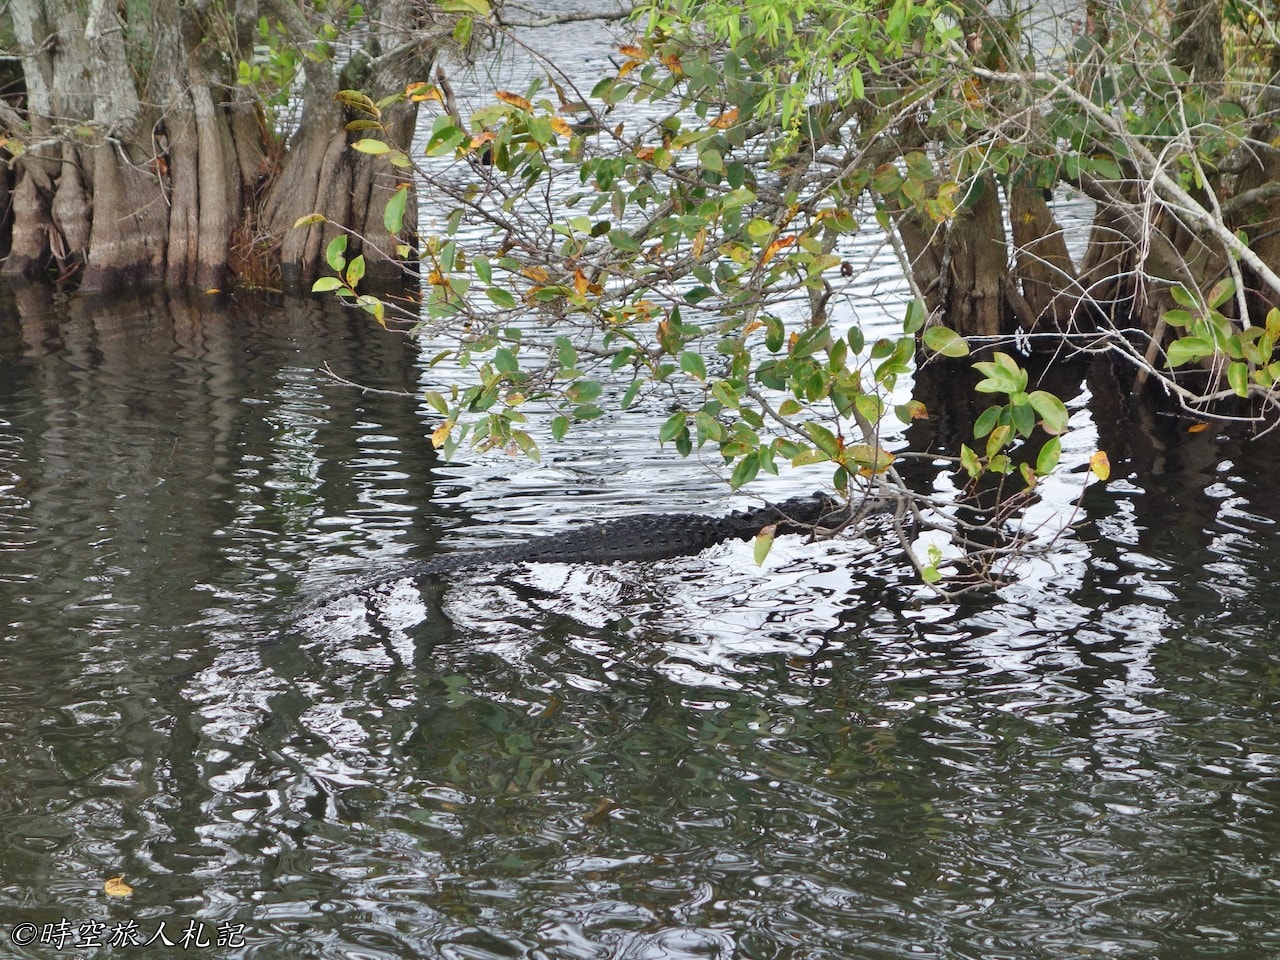 大沼澤地國家公園,Shark Valley,Gulf coast,Everglades national park,沼澤生態 4